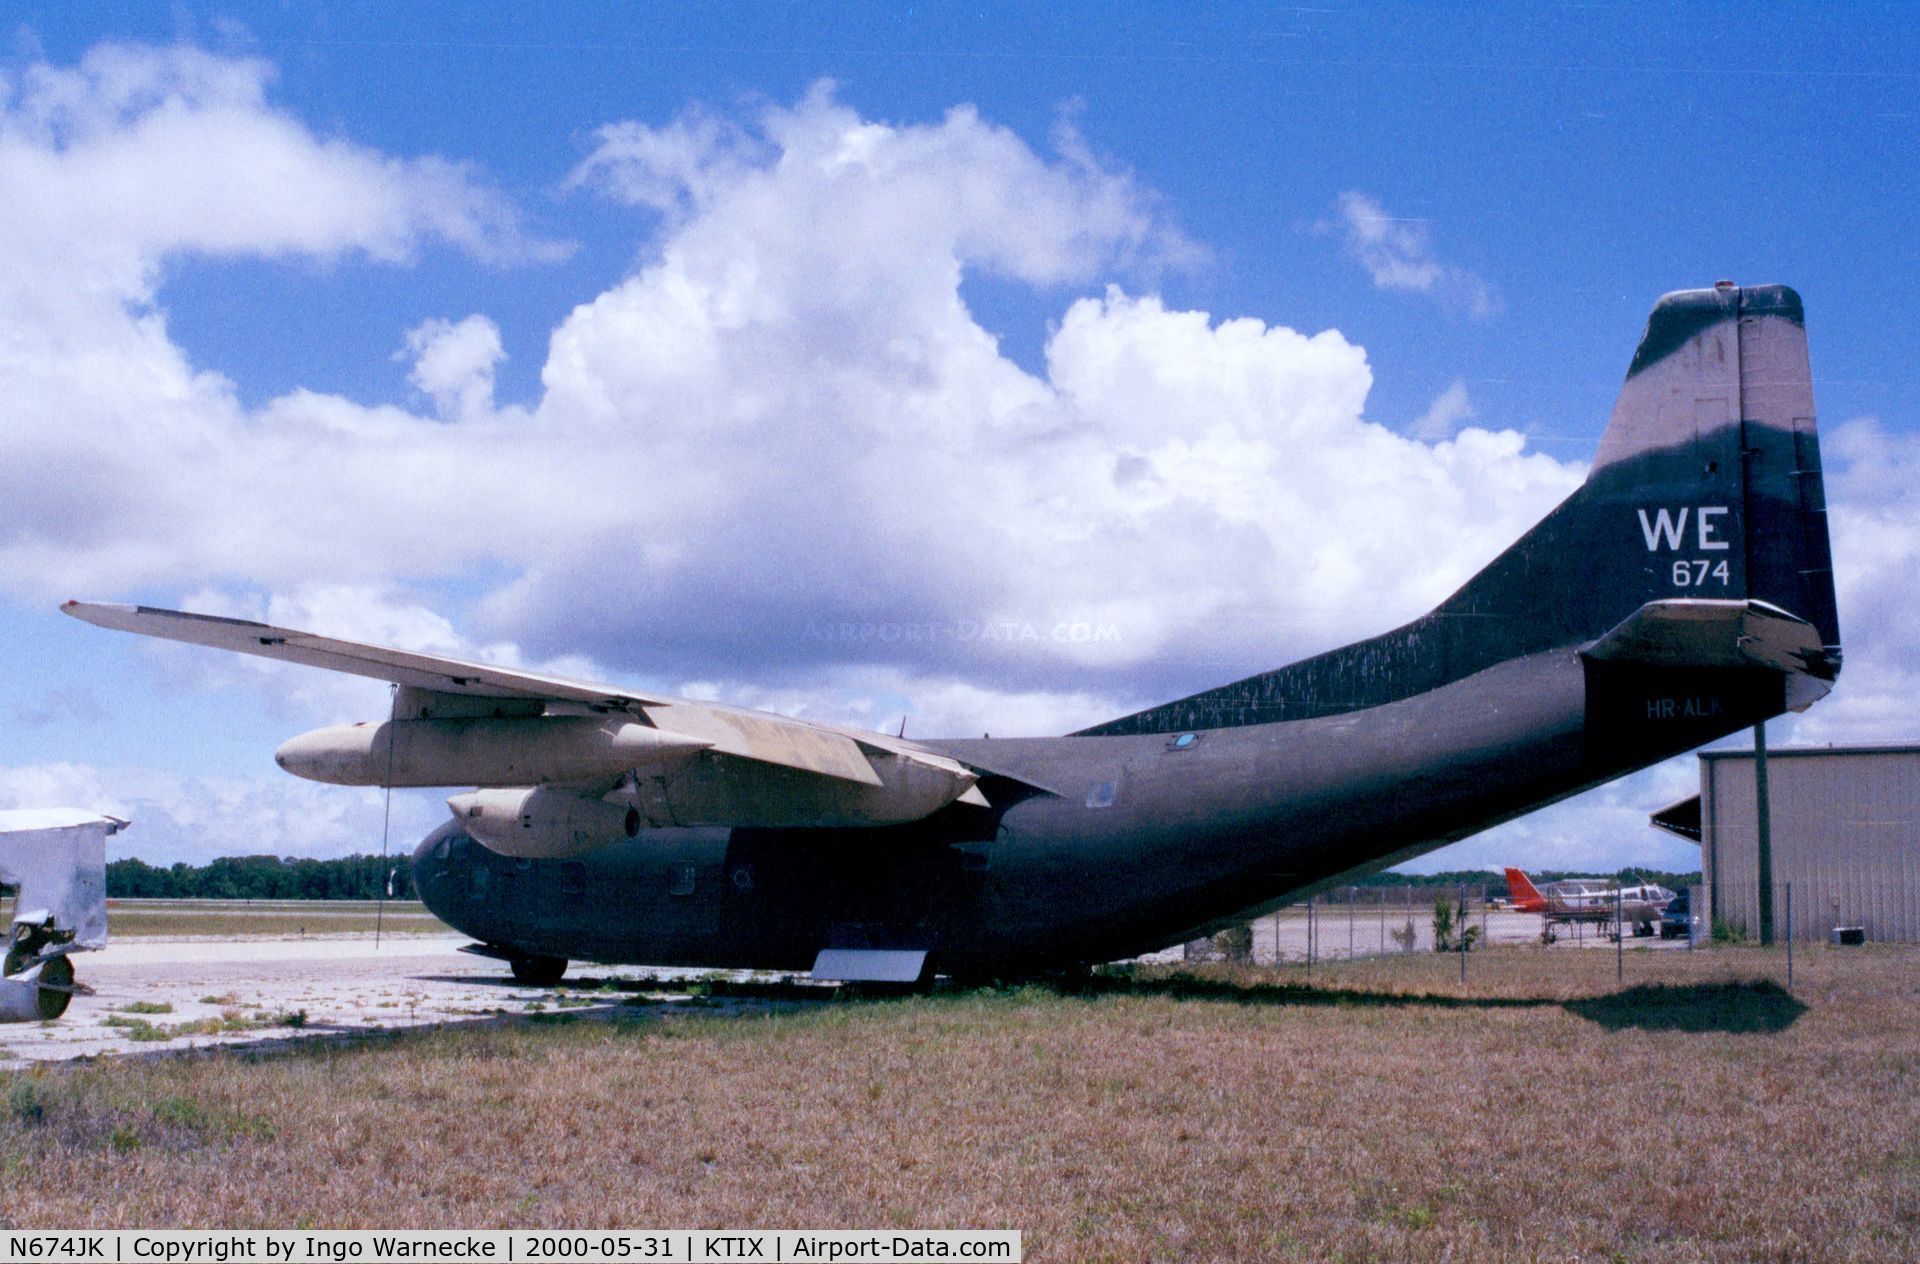 N674JK, 1954 Fairchild C-123K Provider C/N 20123, Fairchild C-123K Provider (minus propellers) at Titusville airfield